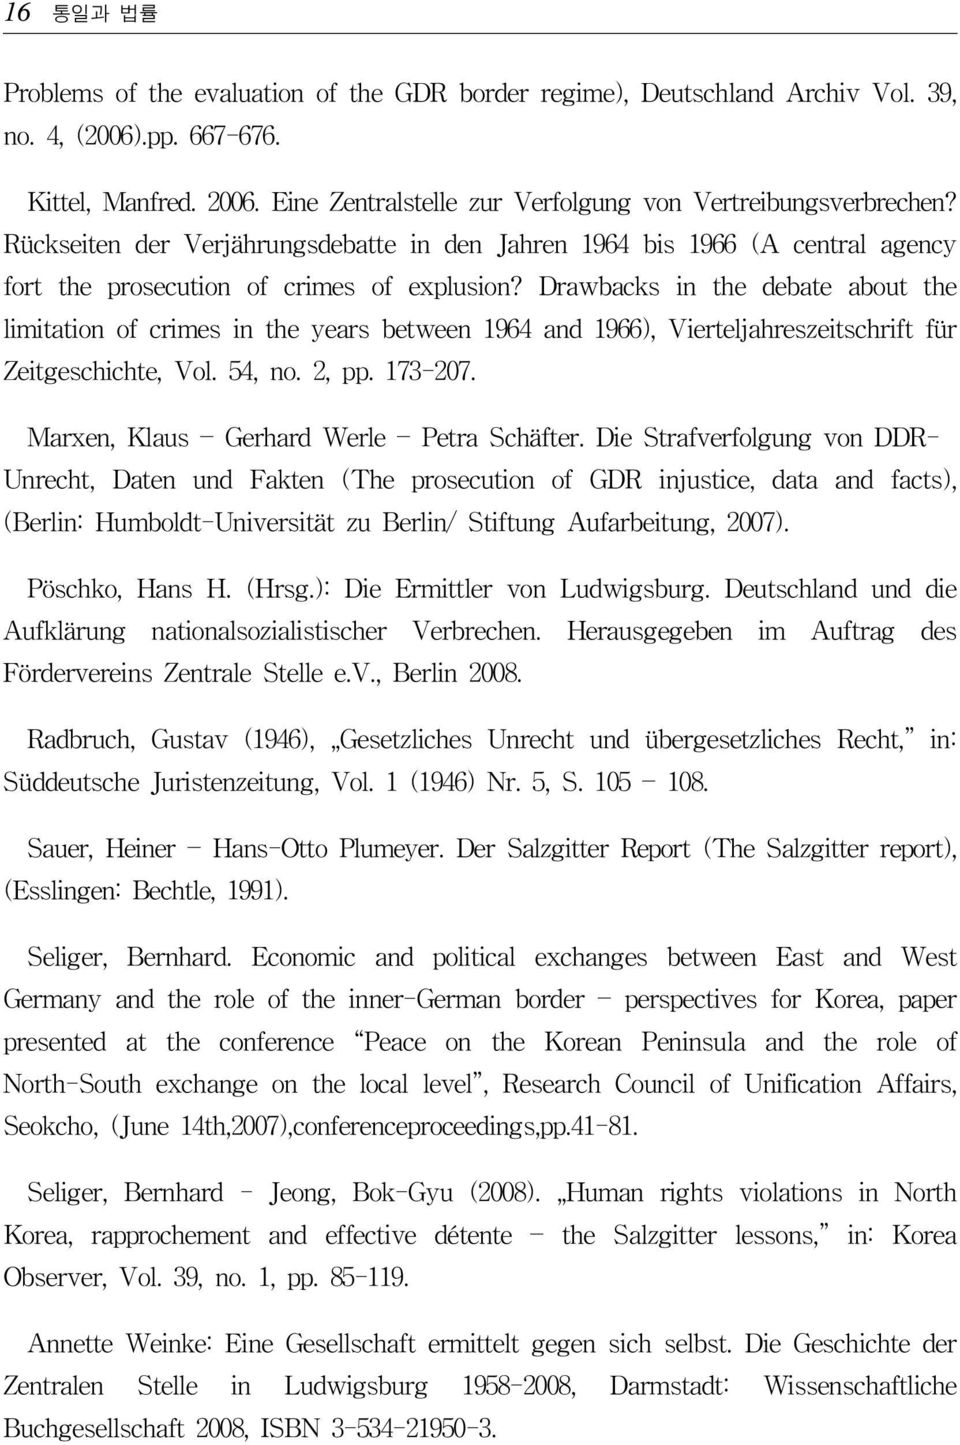 Drawbacks in the debate about the limitation of crimes in the years between 1964 and 1966), Vierteljahreszeitschrift für Zeitgeschichte, Vol. 54, no. 2, pp. 173-207.